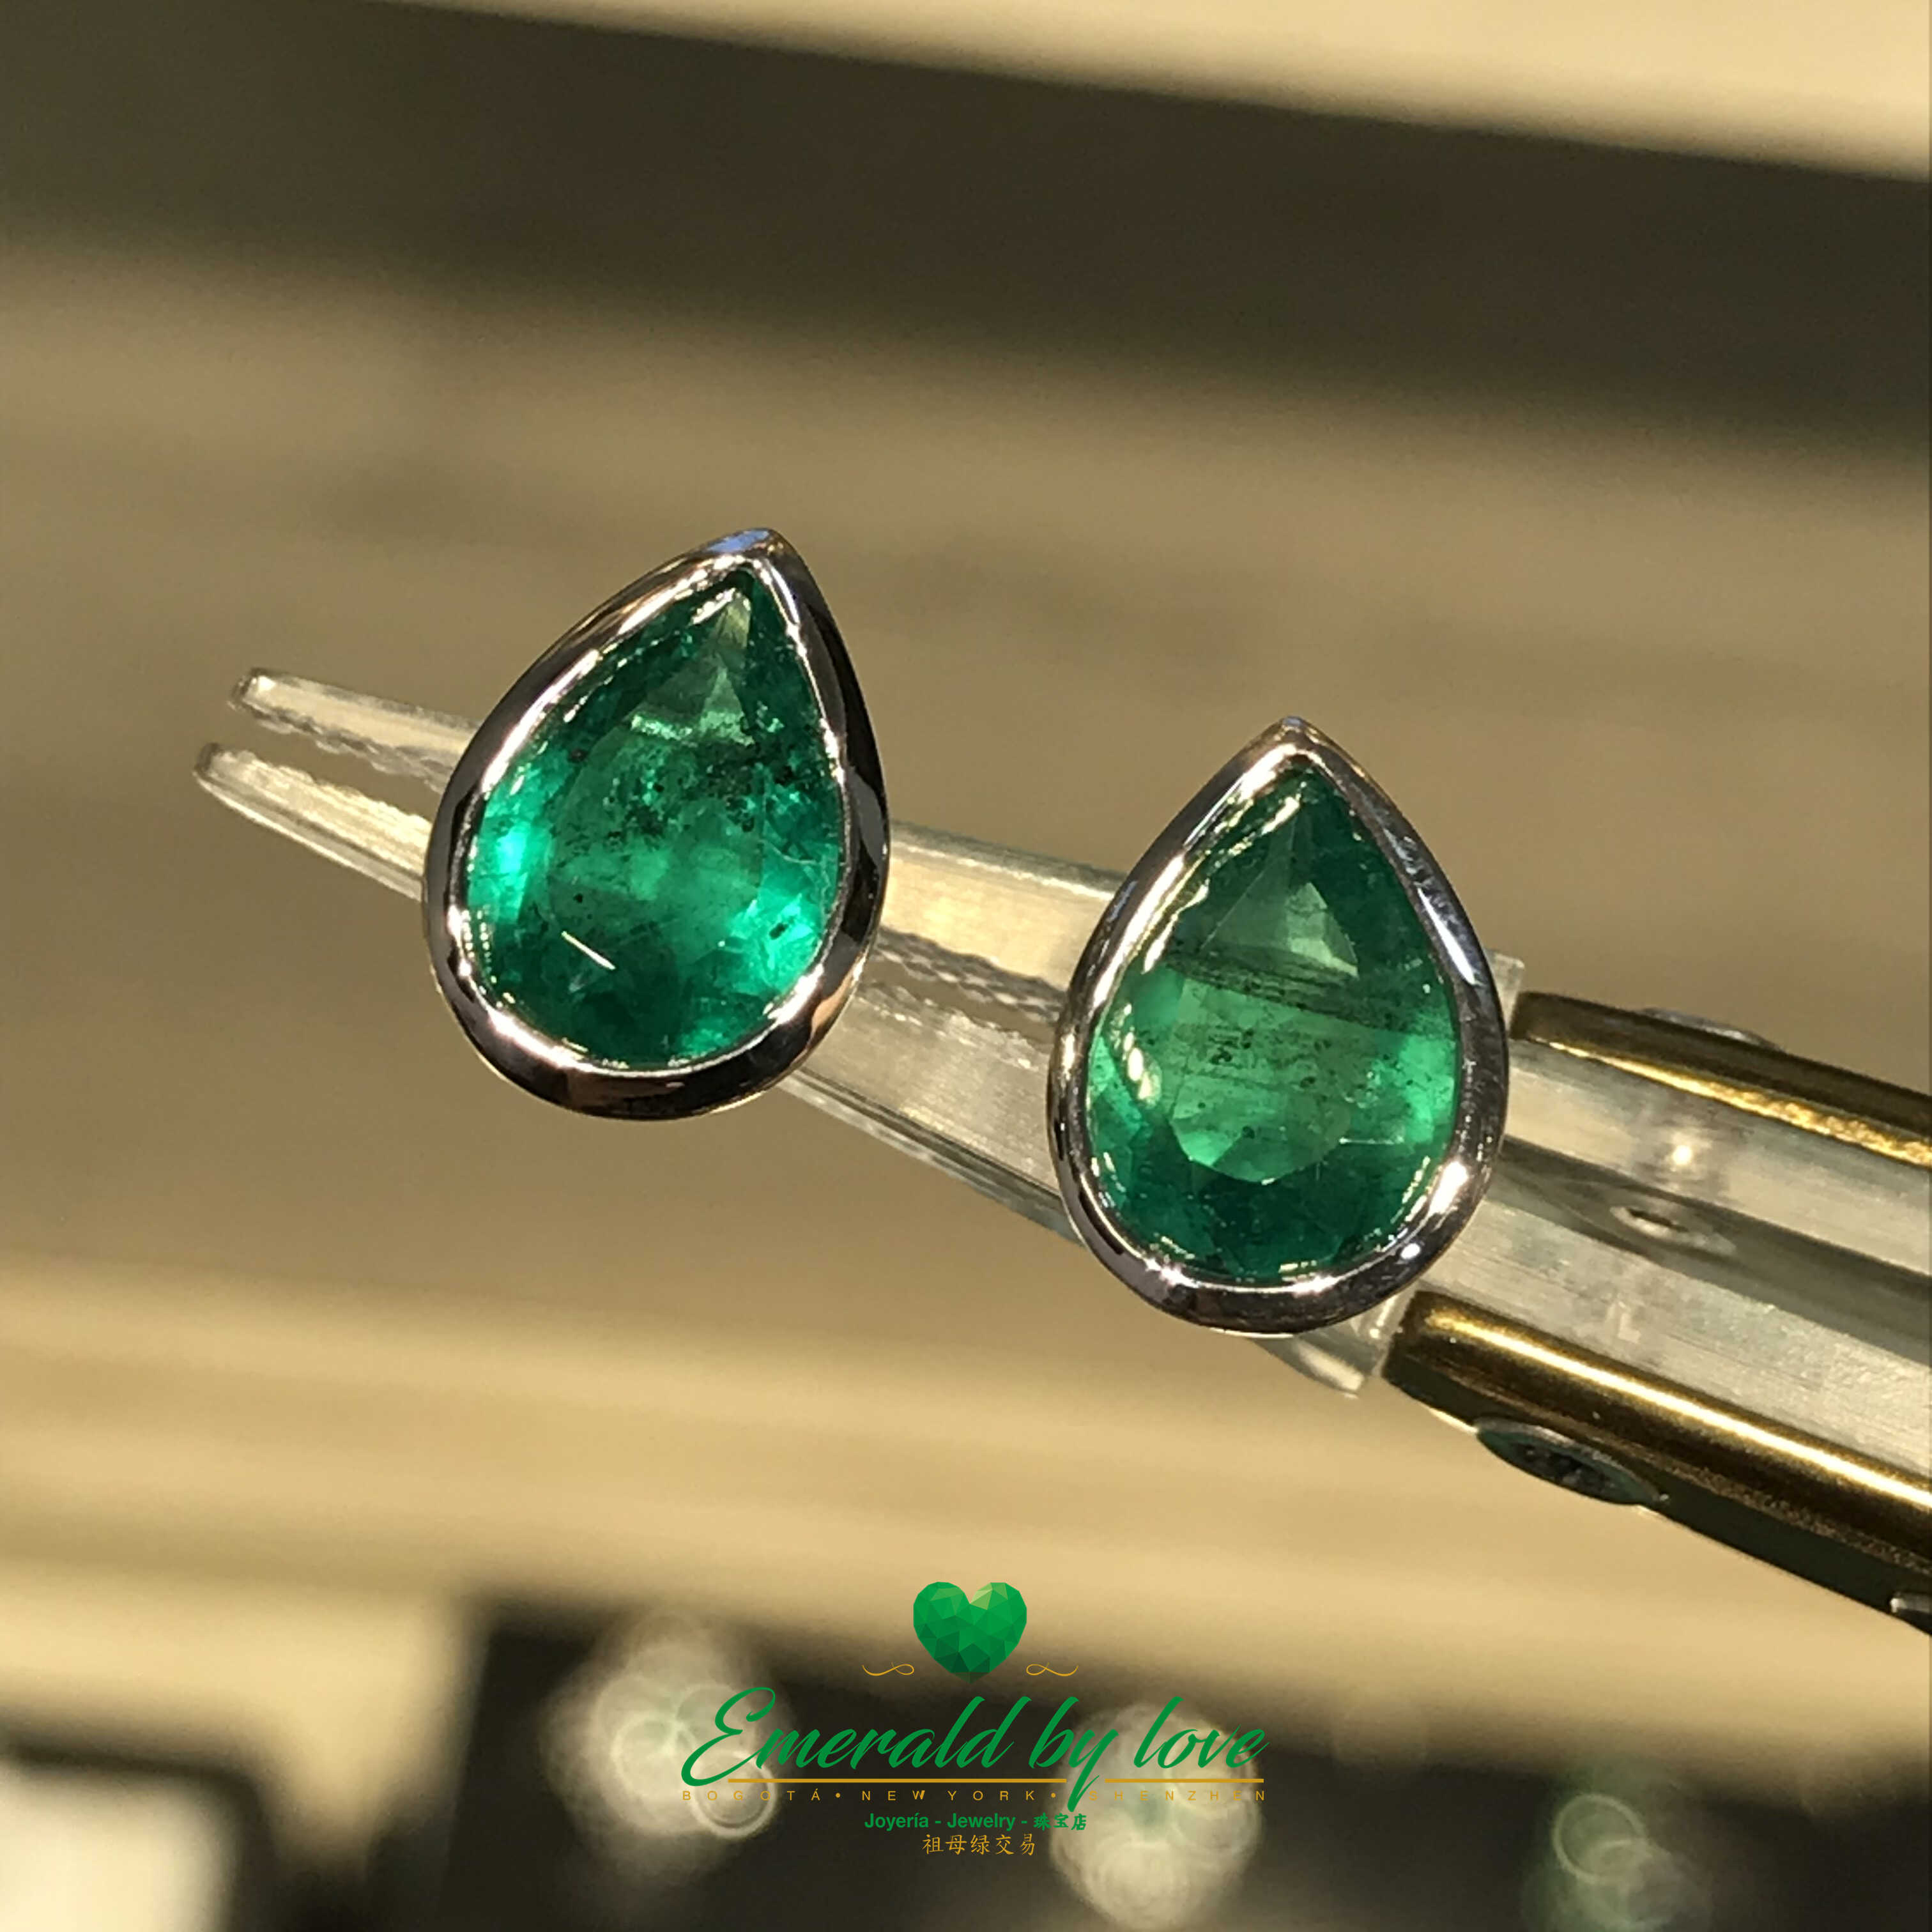 Teardrop-Cut Colombian Emerald Earrings in 18K White Gold